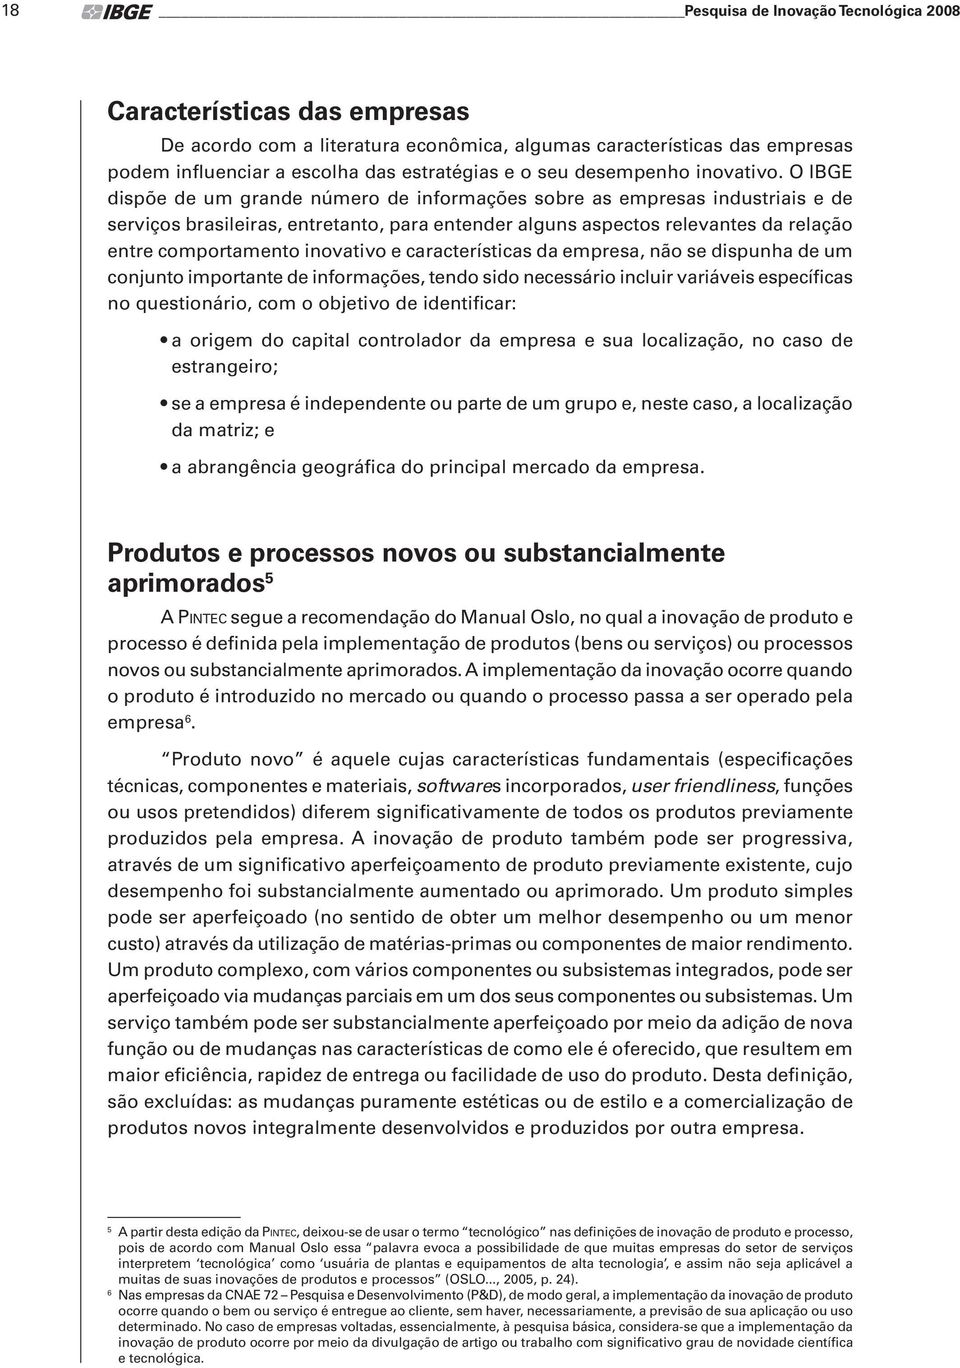 O IBGE dispõe de um grande número de informações sobre as empresas industriais e de serviços brasileiras, entretanto, para entender alguns aspectos relevantes da relação entre comportamento inovativo